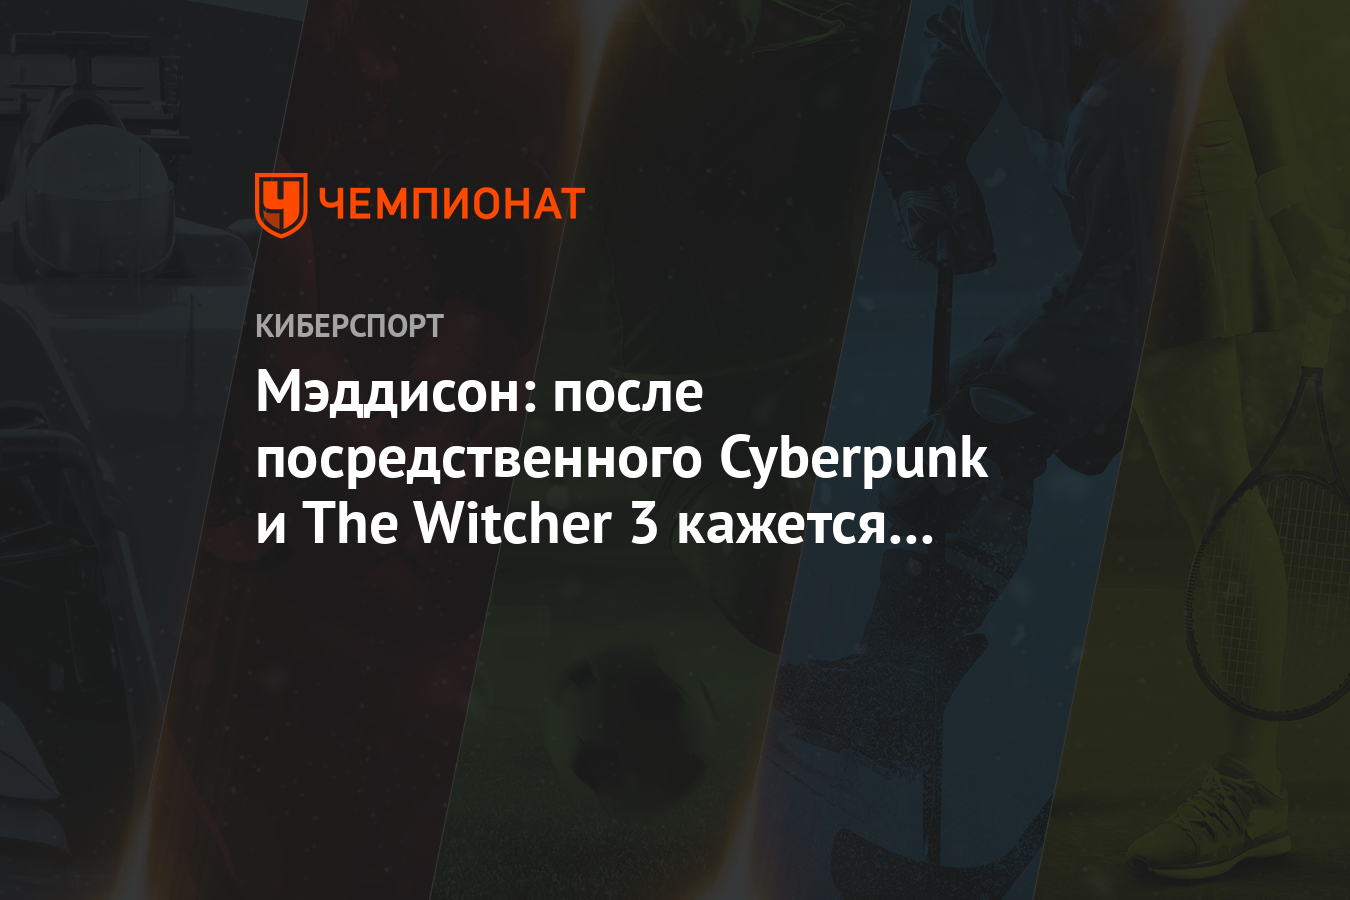 Мэдисон: после посредственного Cyberpunk и The Witcher 3 кажется каким-то убогим концов